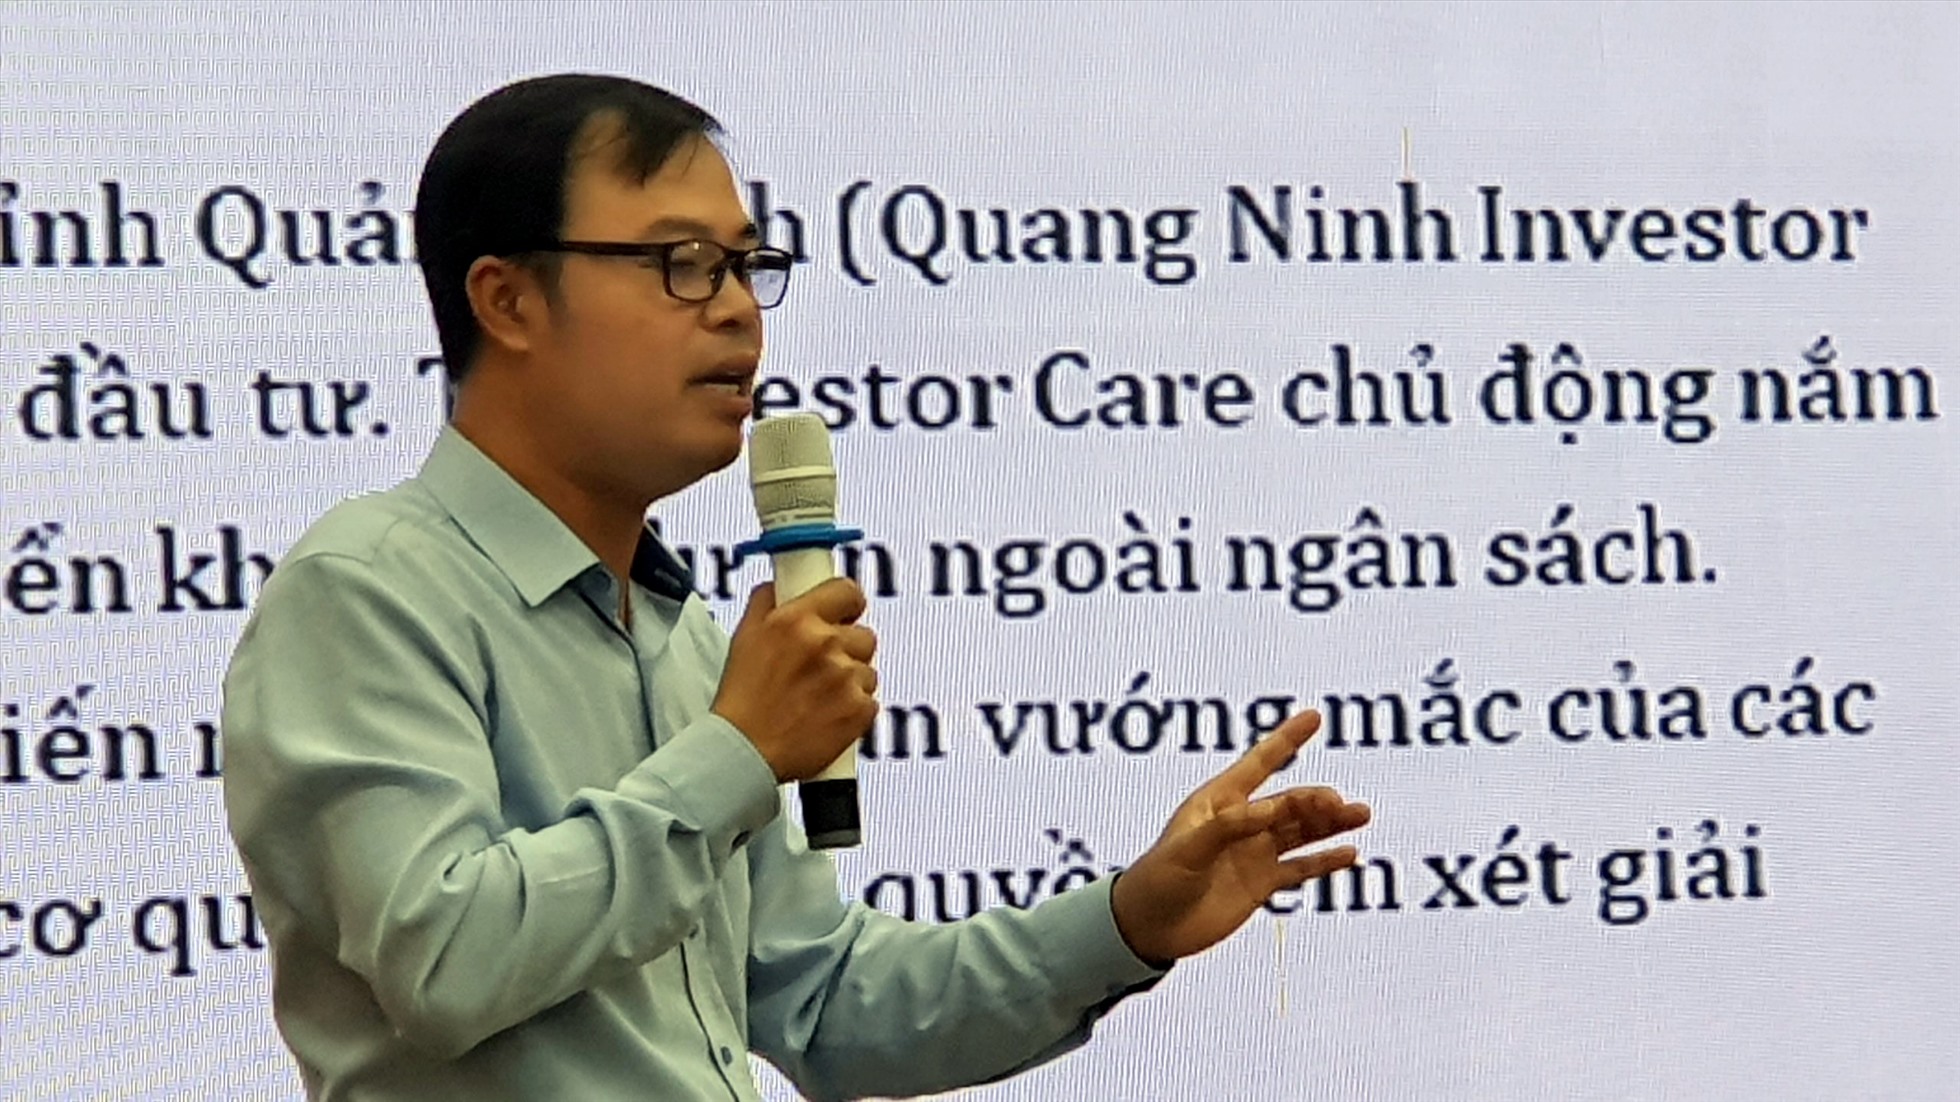 Ông Phạm Ngọc Thạch, phó trưởng Ban pháp chế VCCI đã chia sẻ một số mô hình và thực tiễn tốt của các tỉnh thuộc nhóm dẫn đầu về chỉ số PCI những năm qua